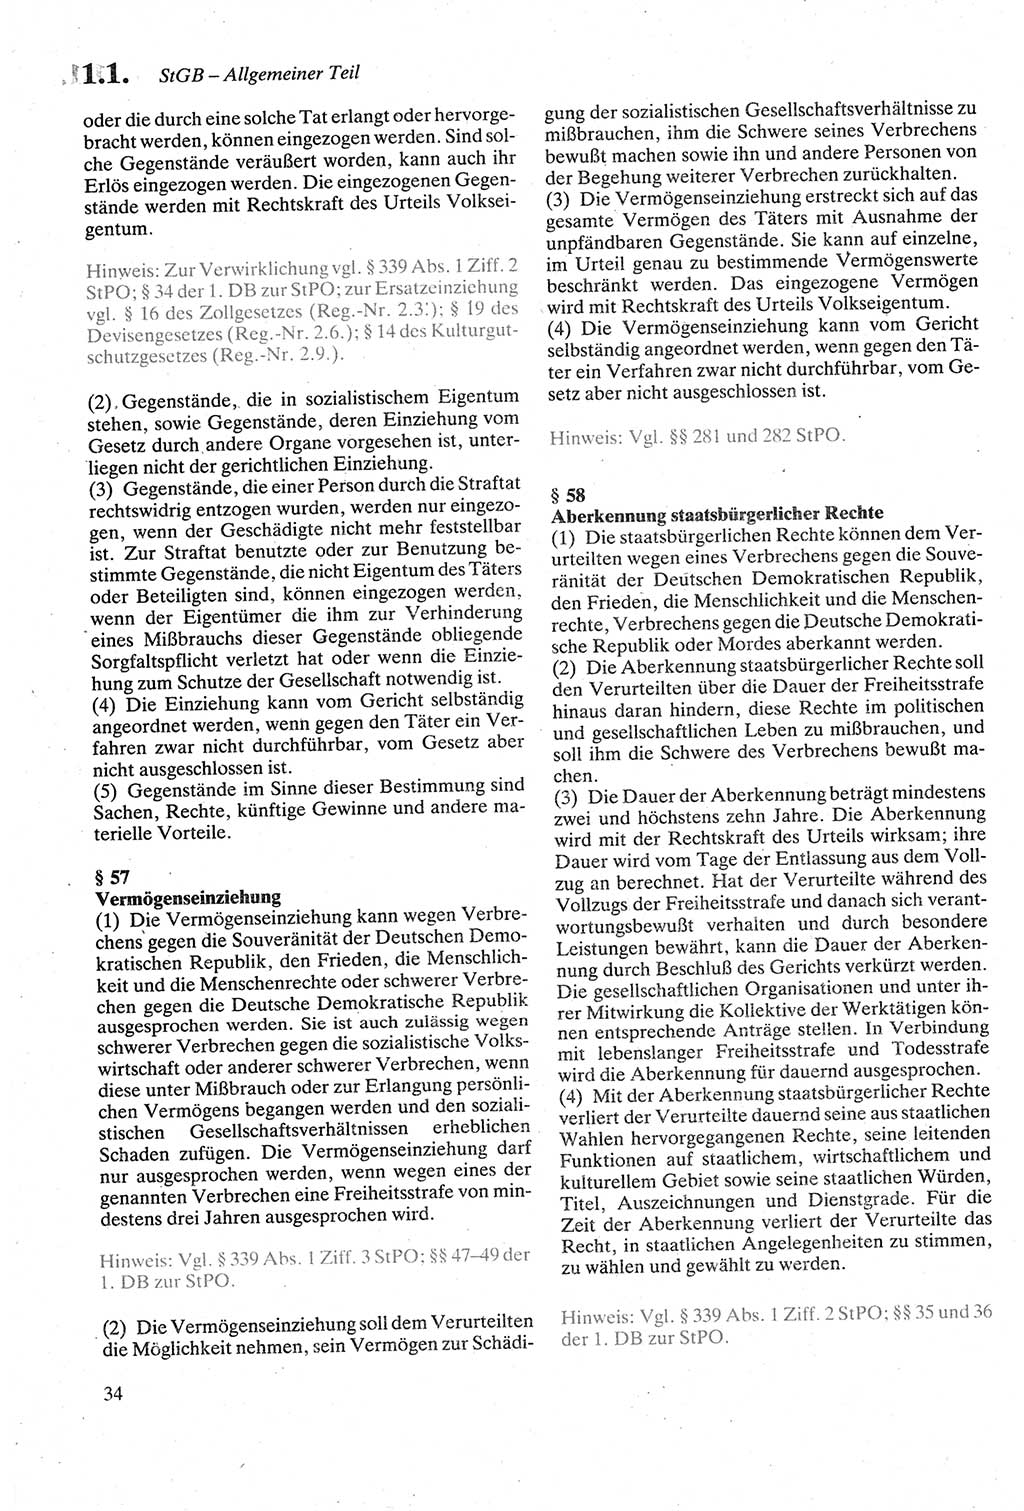 Strafgesetzbuch (StGB) der Deutschen Demokratischen Republik (DDR) sowie angrenzende Gesetze und Bestimmungen 1979, Seite 34 (StGB DDR Ges. Best. 1979, S. 34)